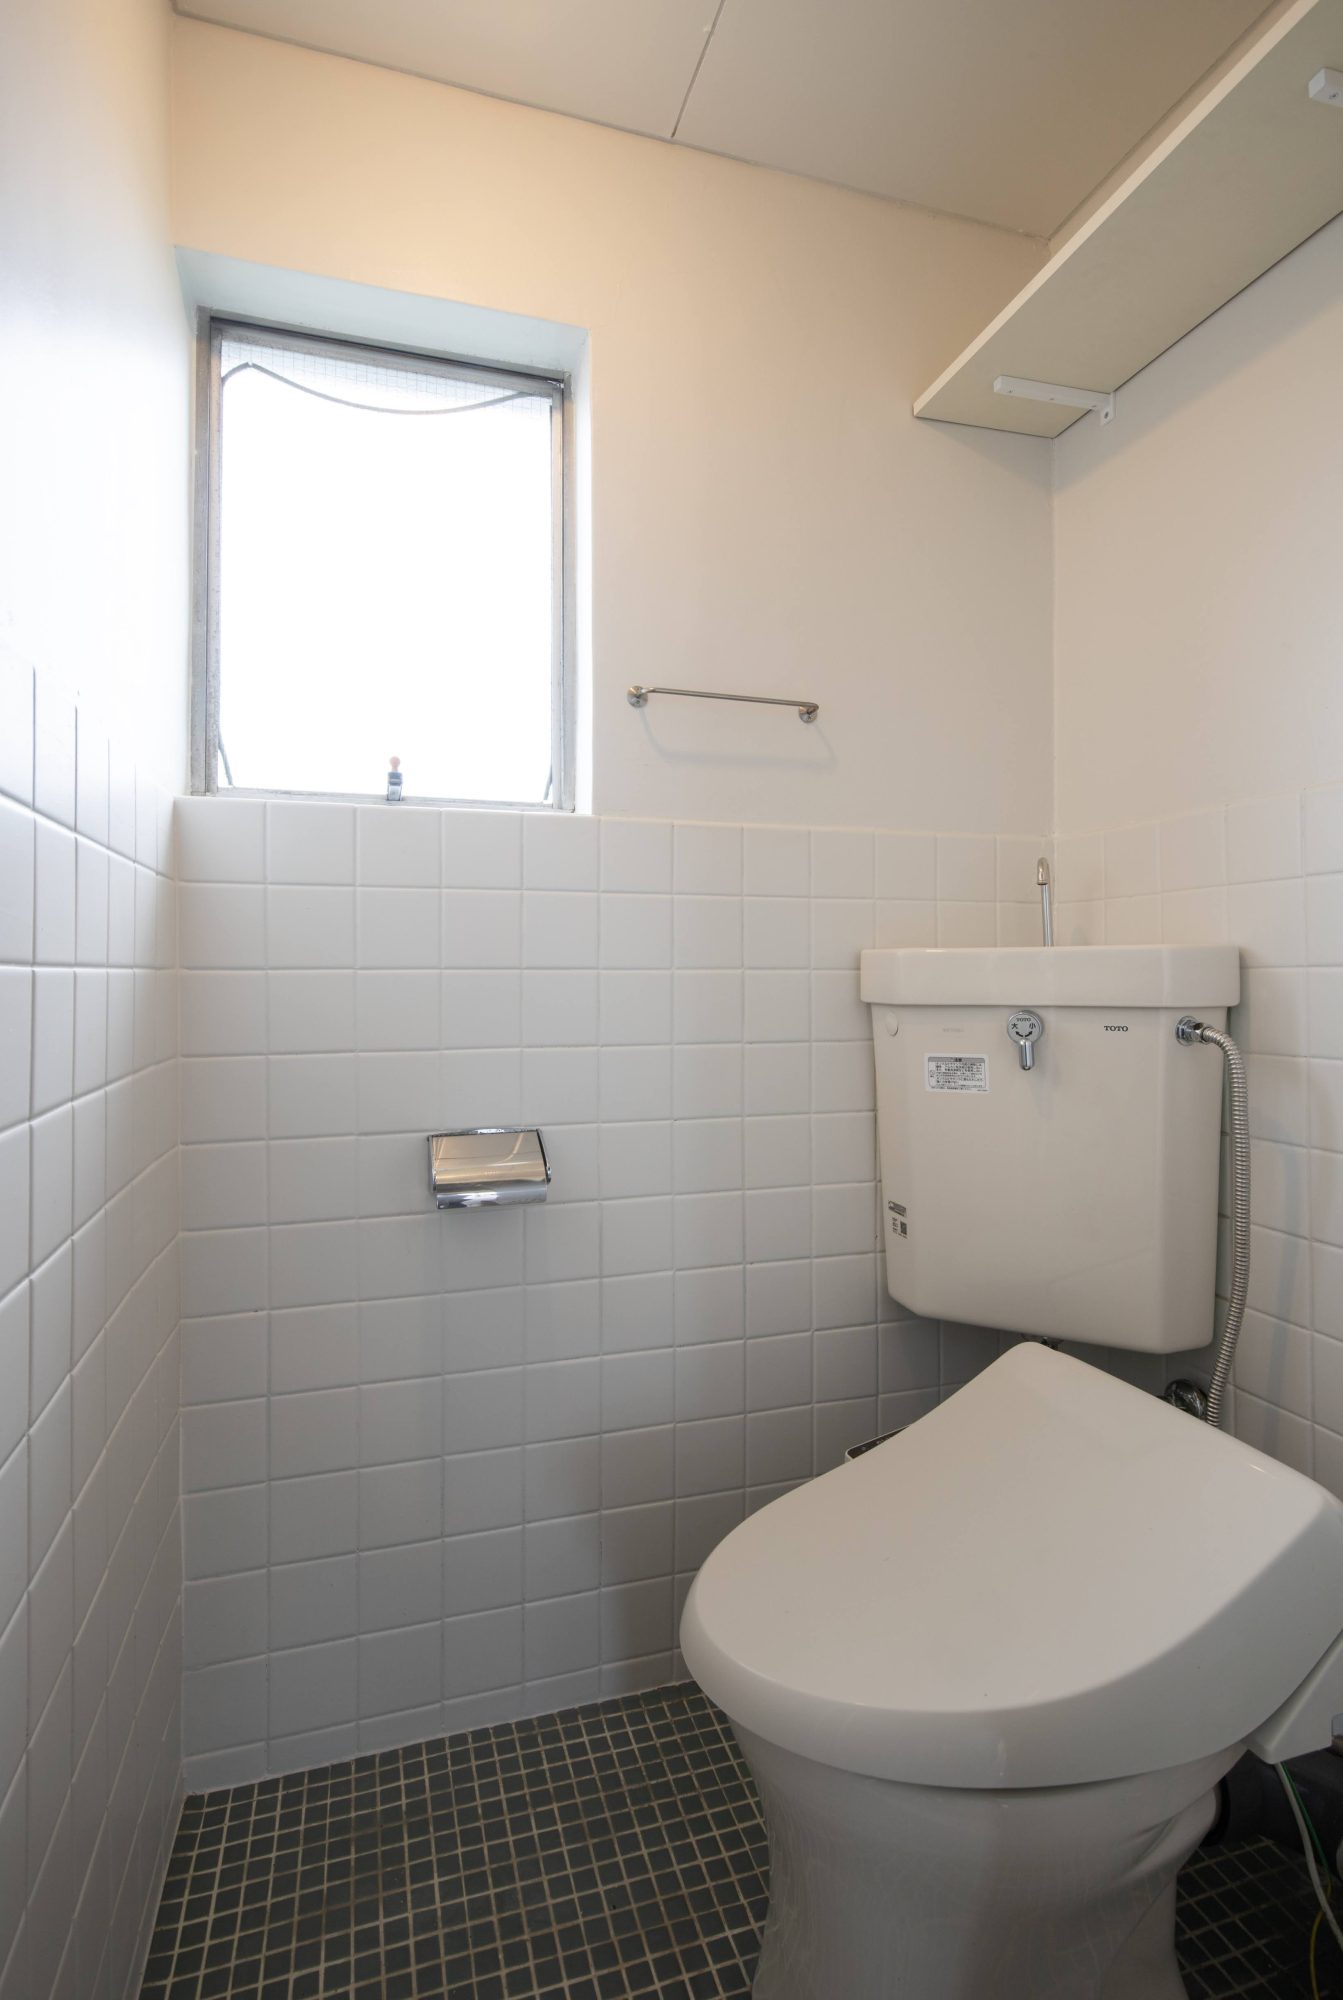 『棒棚受け 白ツヤ 角 180』を使い、収納スペースを確保しつつ、すっきりとしたトイレ空間に。